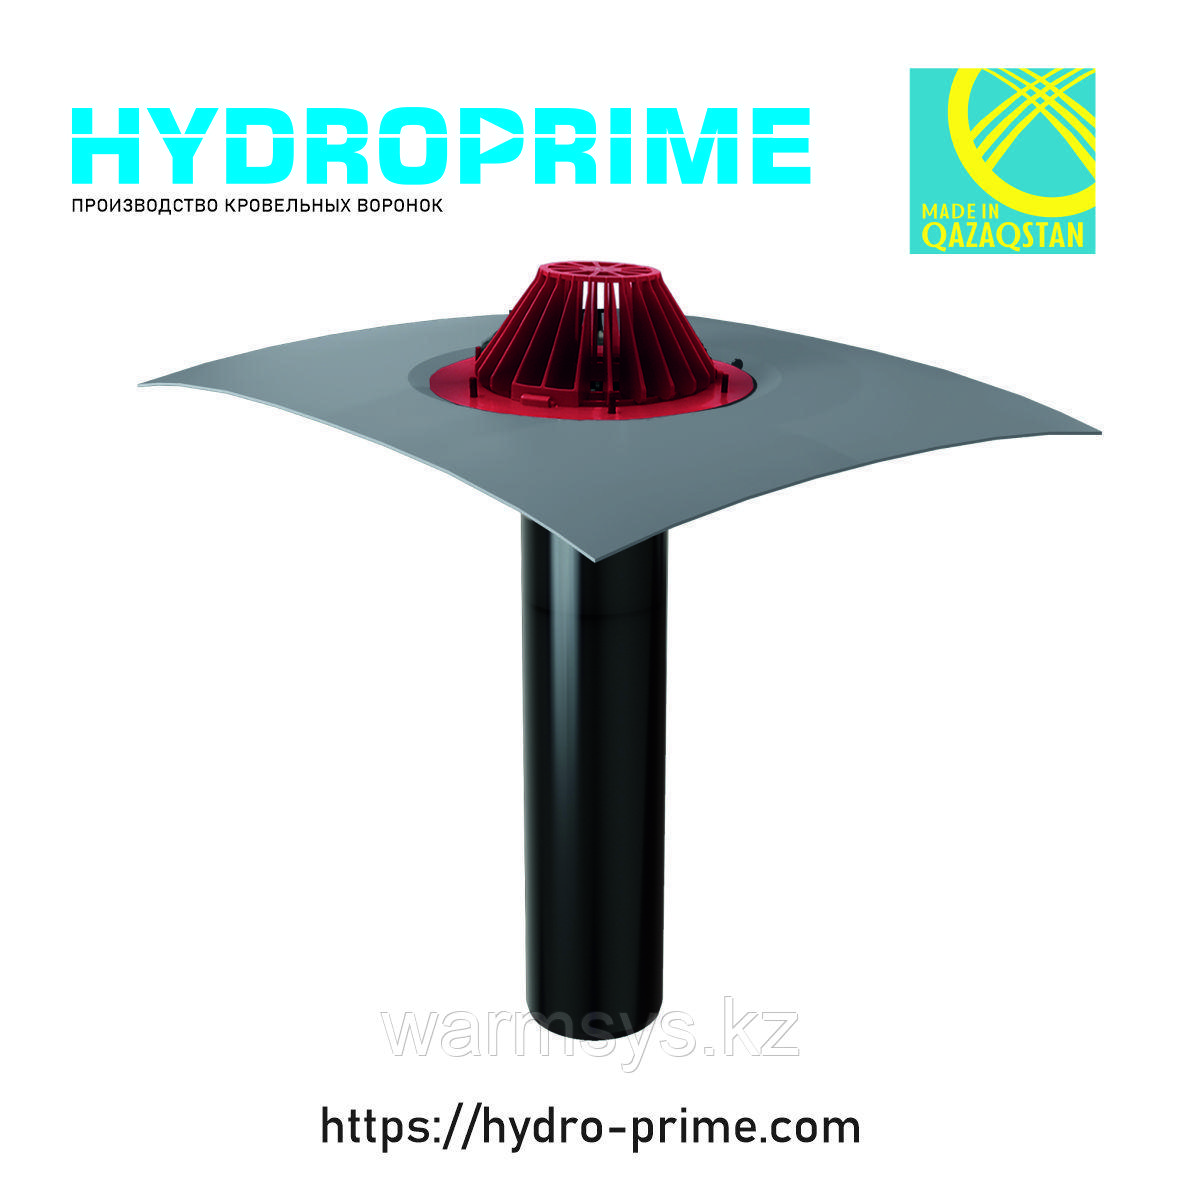 Кровельная воронка HydroPrime 110x720 с ПВХ полотном